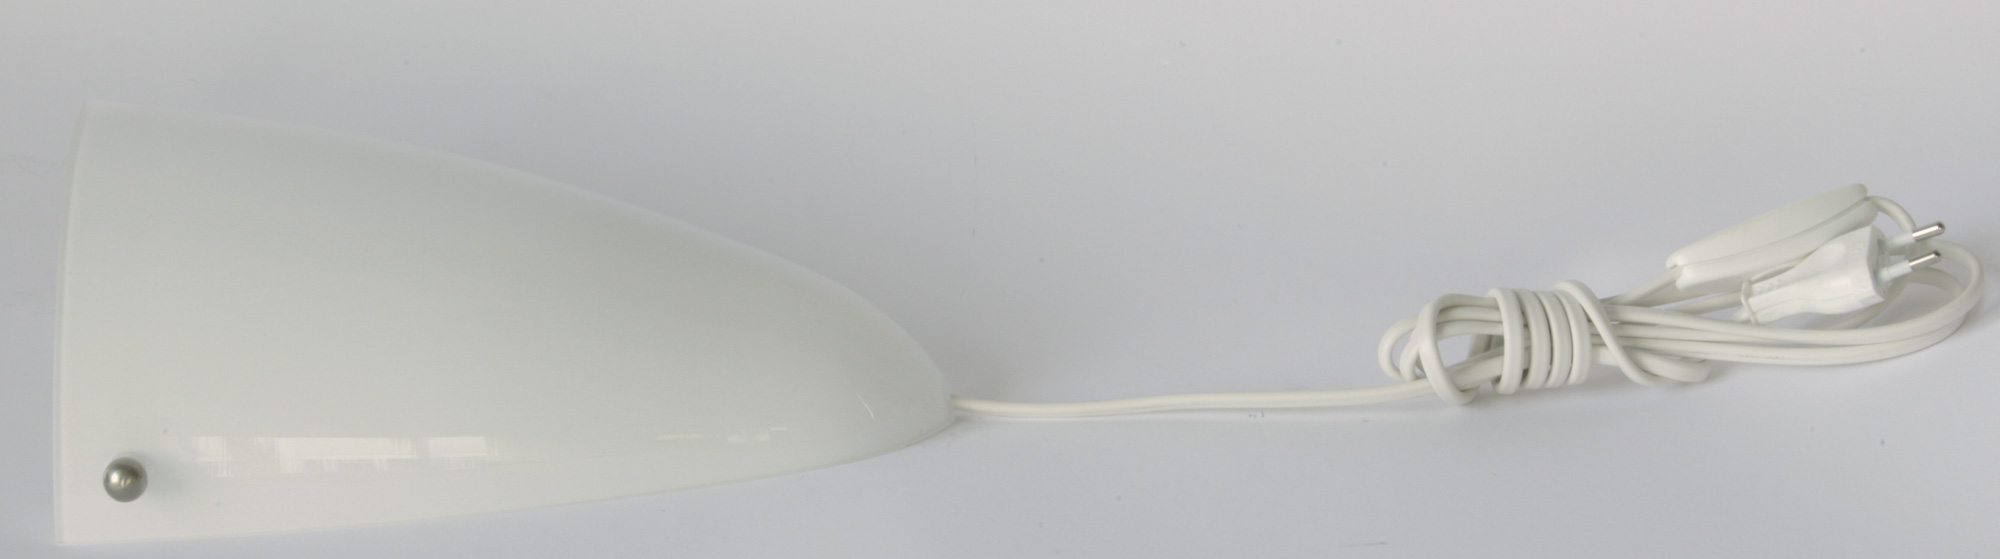 Flache Wandleuchte mit Opalglas in Schildform: Inklusive weißem 200-cm-PVC Kabel mit Schalter und Stecker